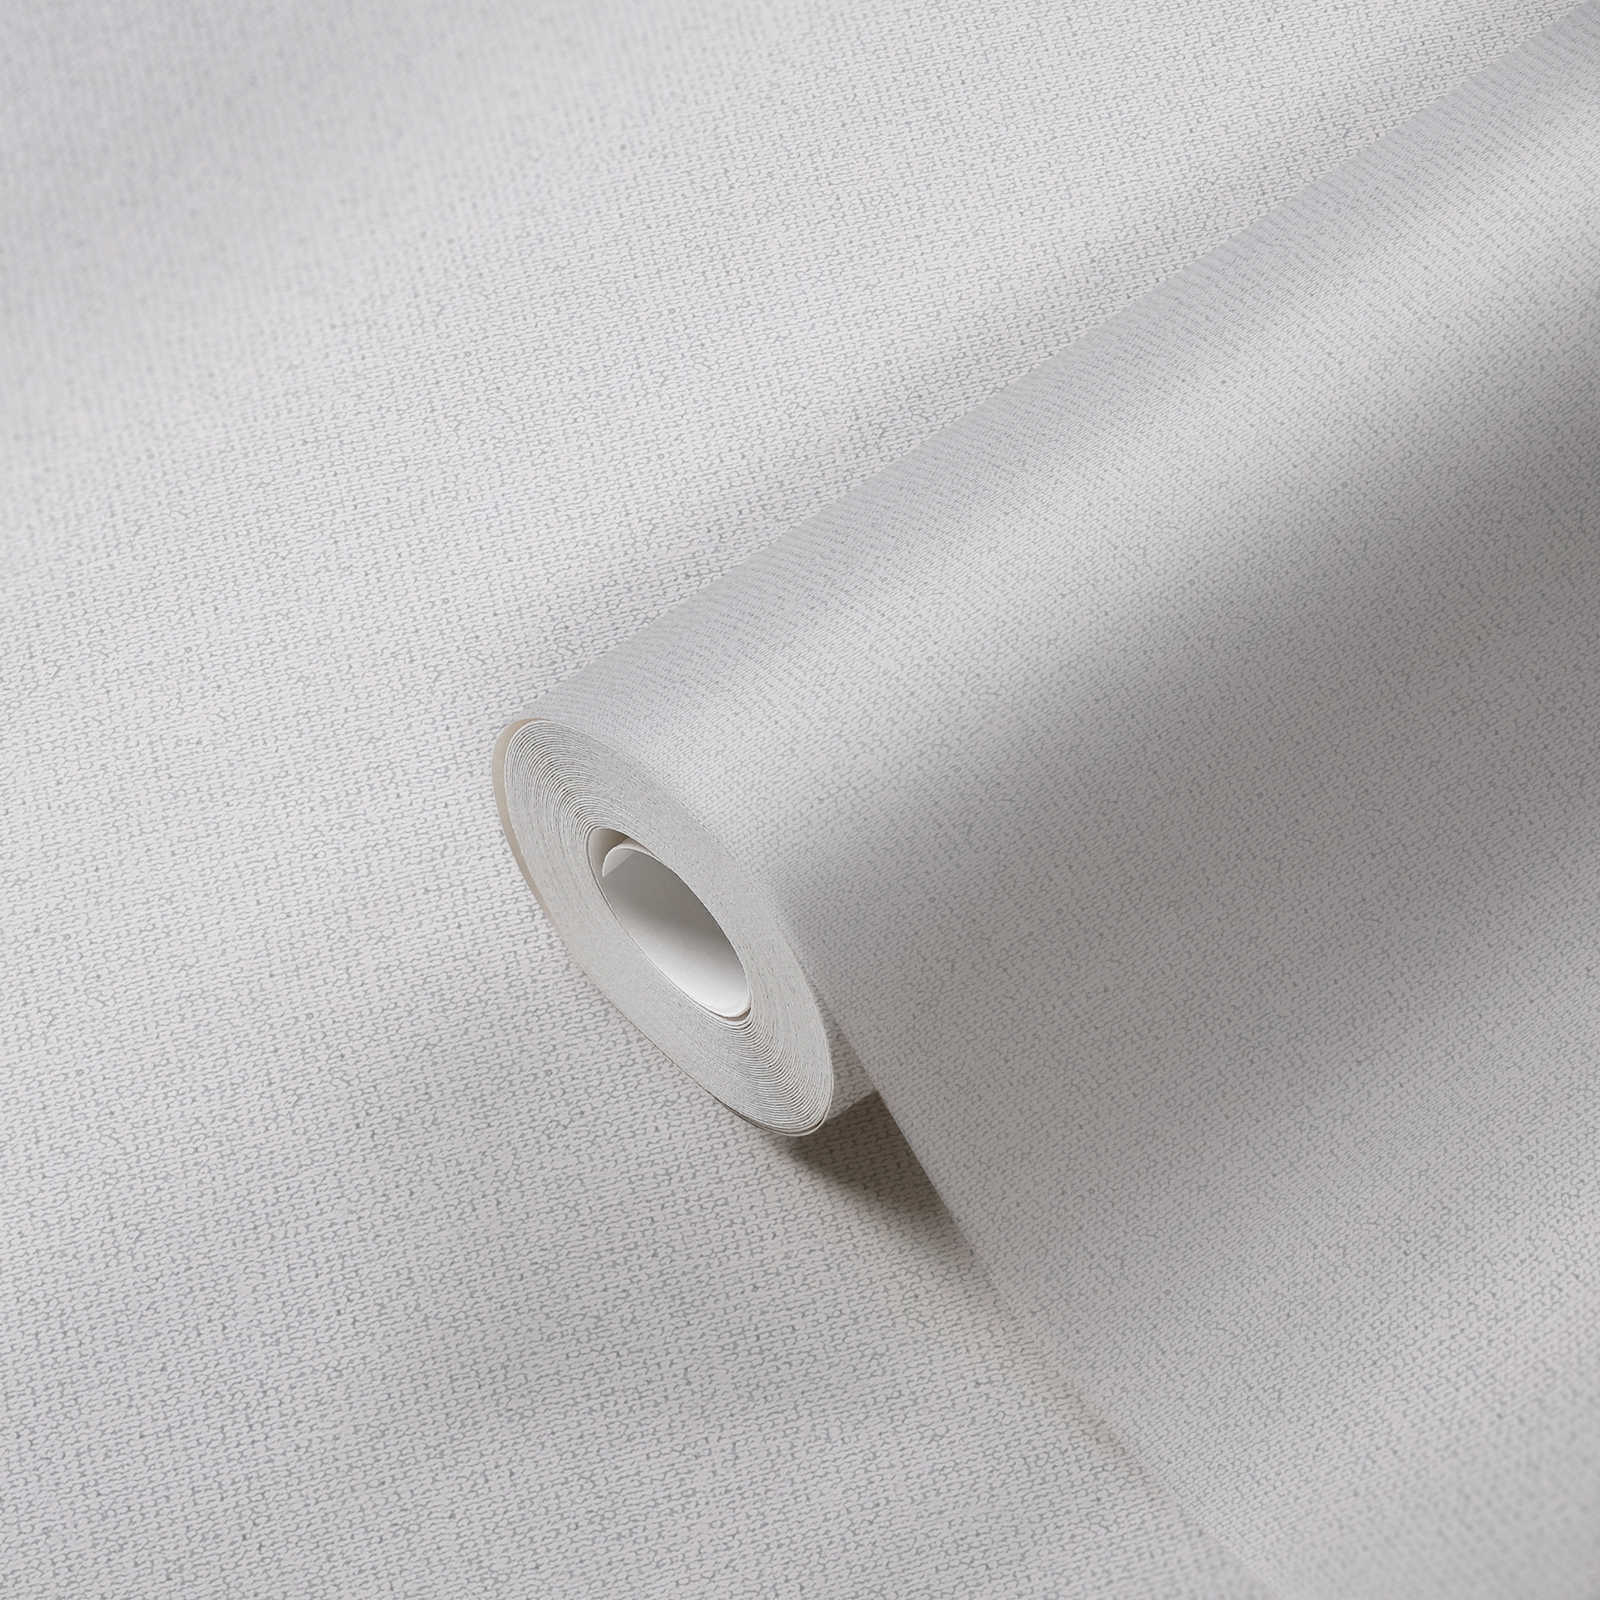             Papier peint uni aspect lin mat naturel - gris clair
        